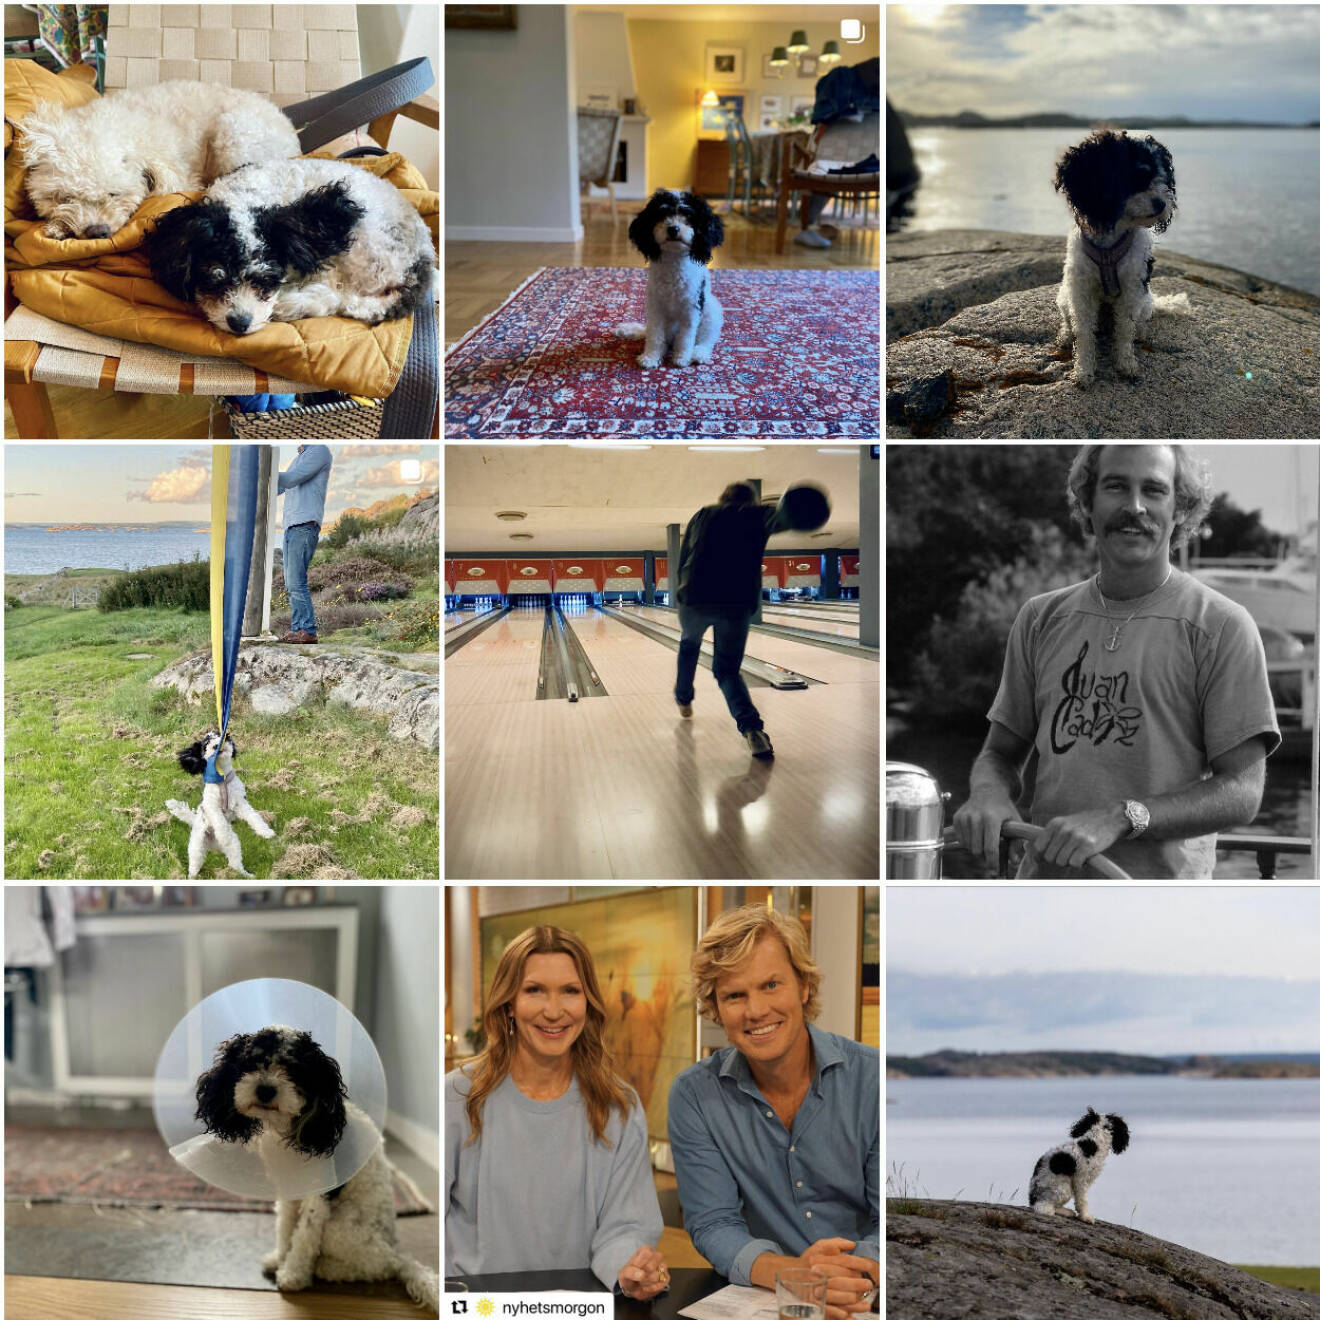 Martin Järborgs Instagramflöde där hunden Majken är med på majoriteten av bilderna